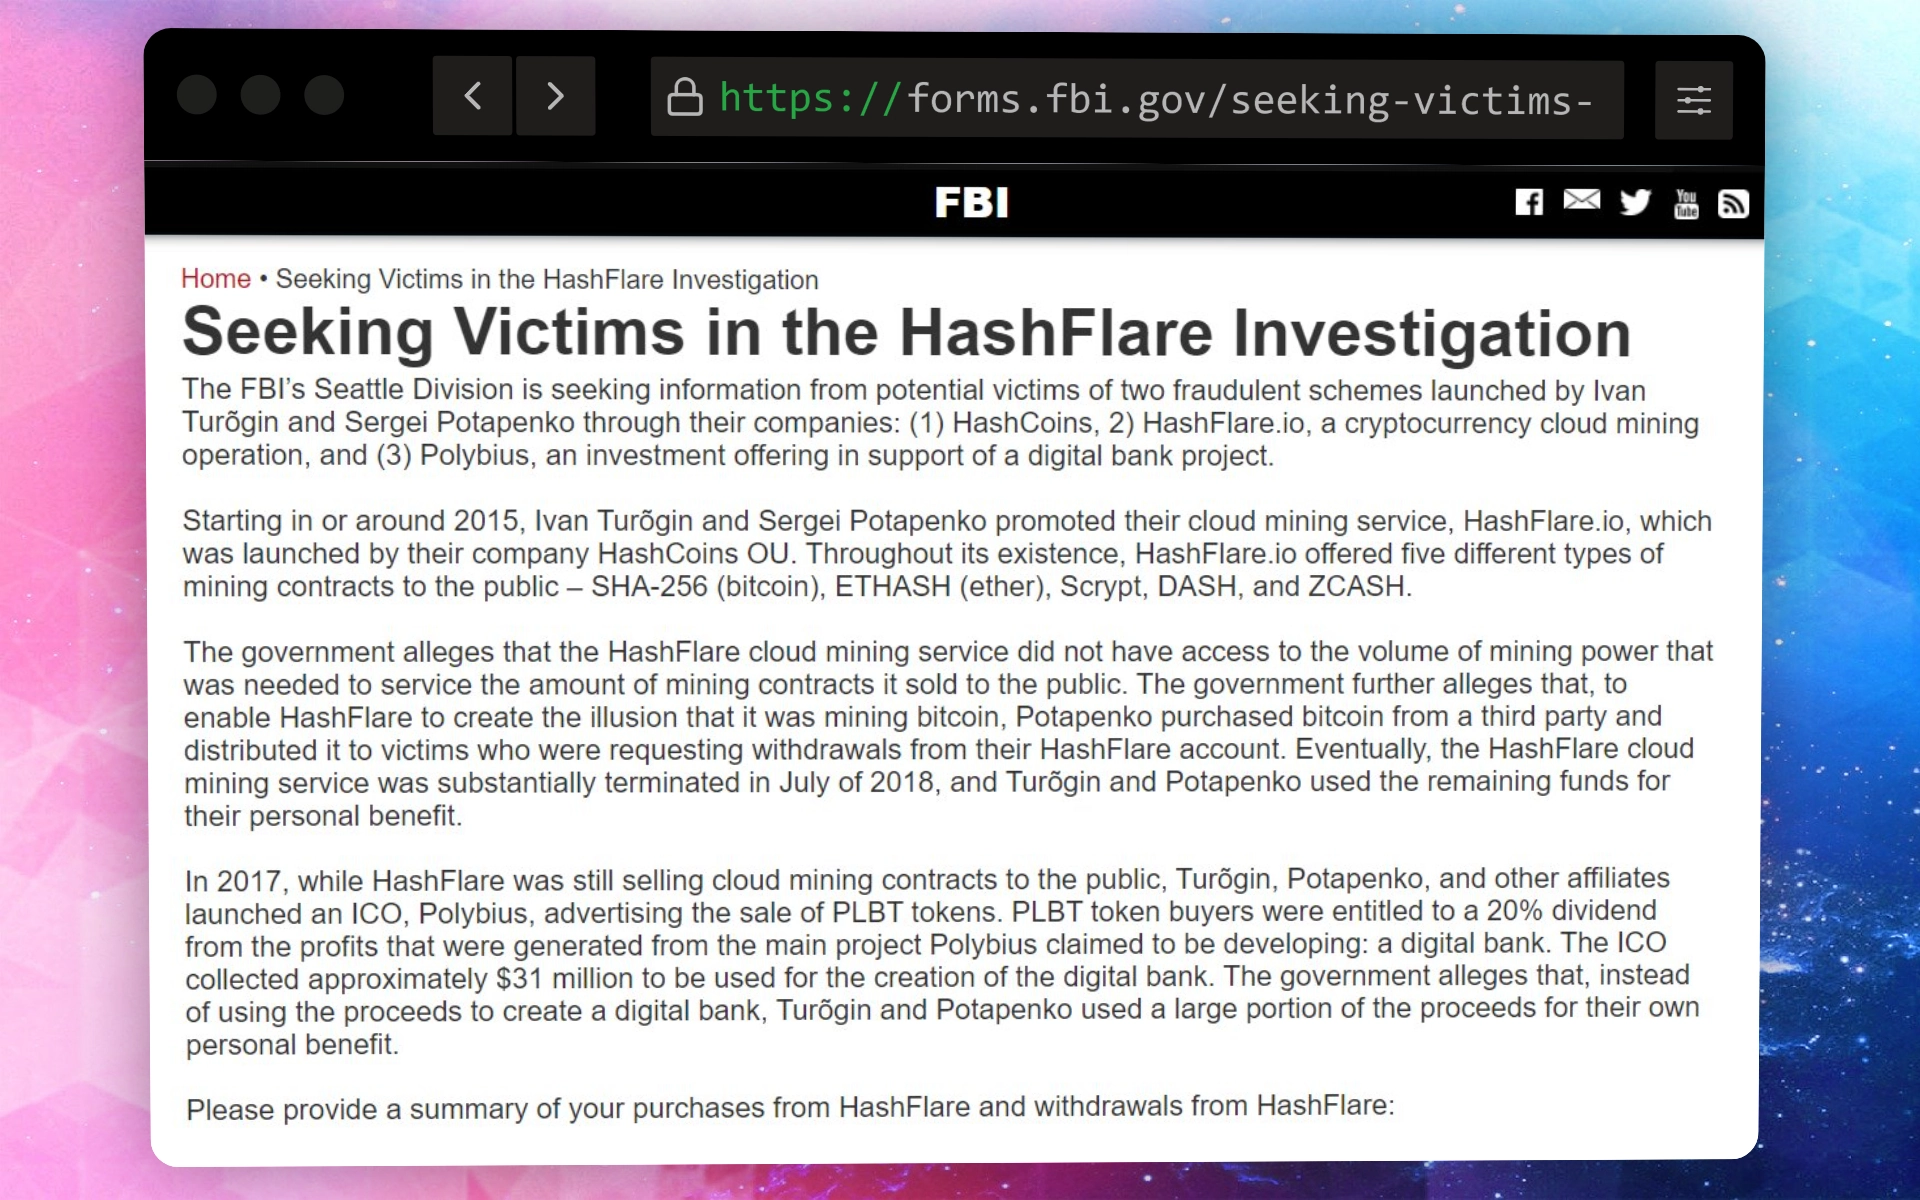 Página del FBI solicitando la cooperación de las víctimas de HashFlare.